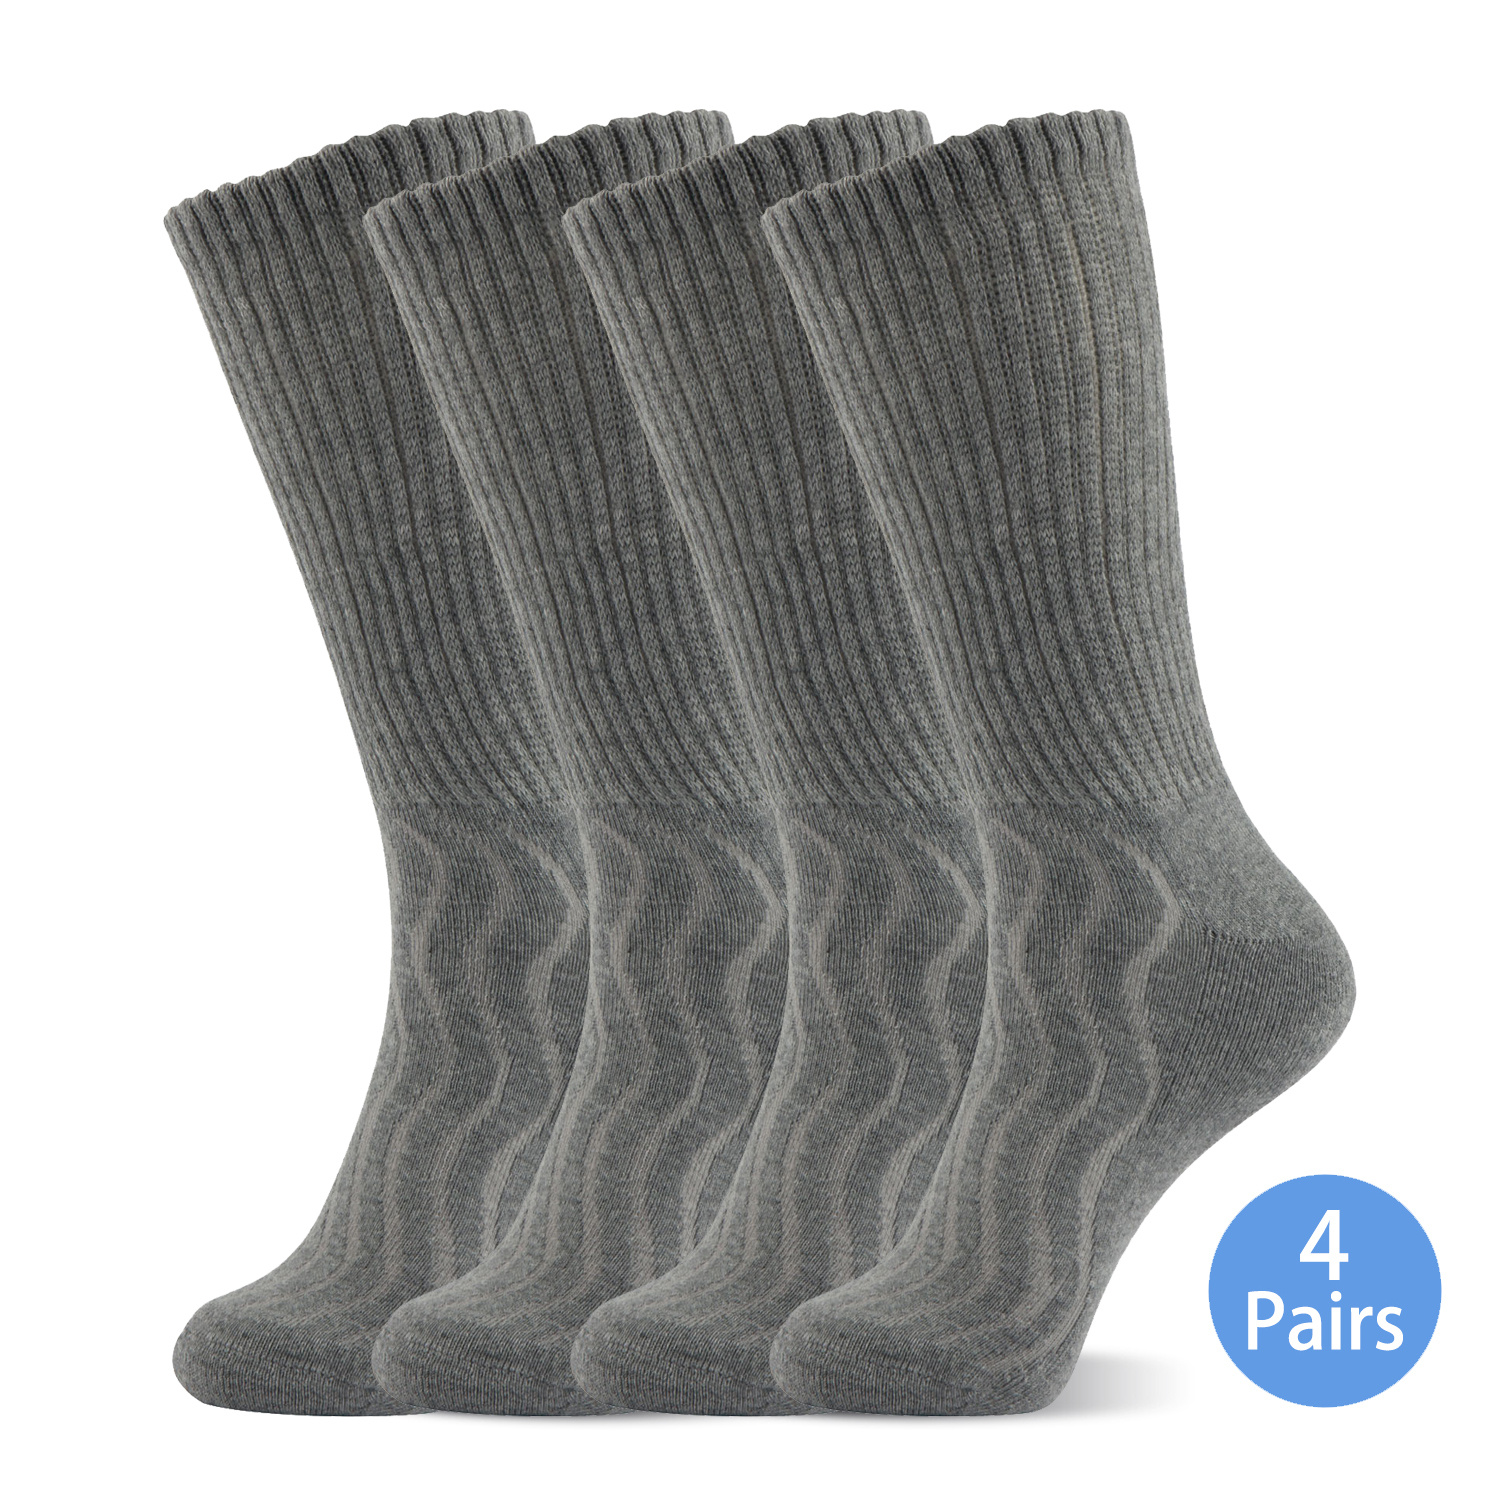 Paquete de 3 pares de calcetines deportivos sin costuras que absorben la  humedad para hombre